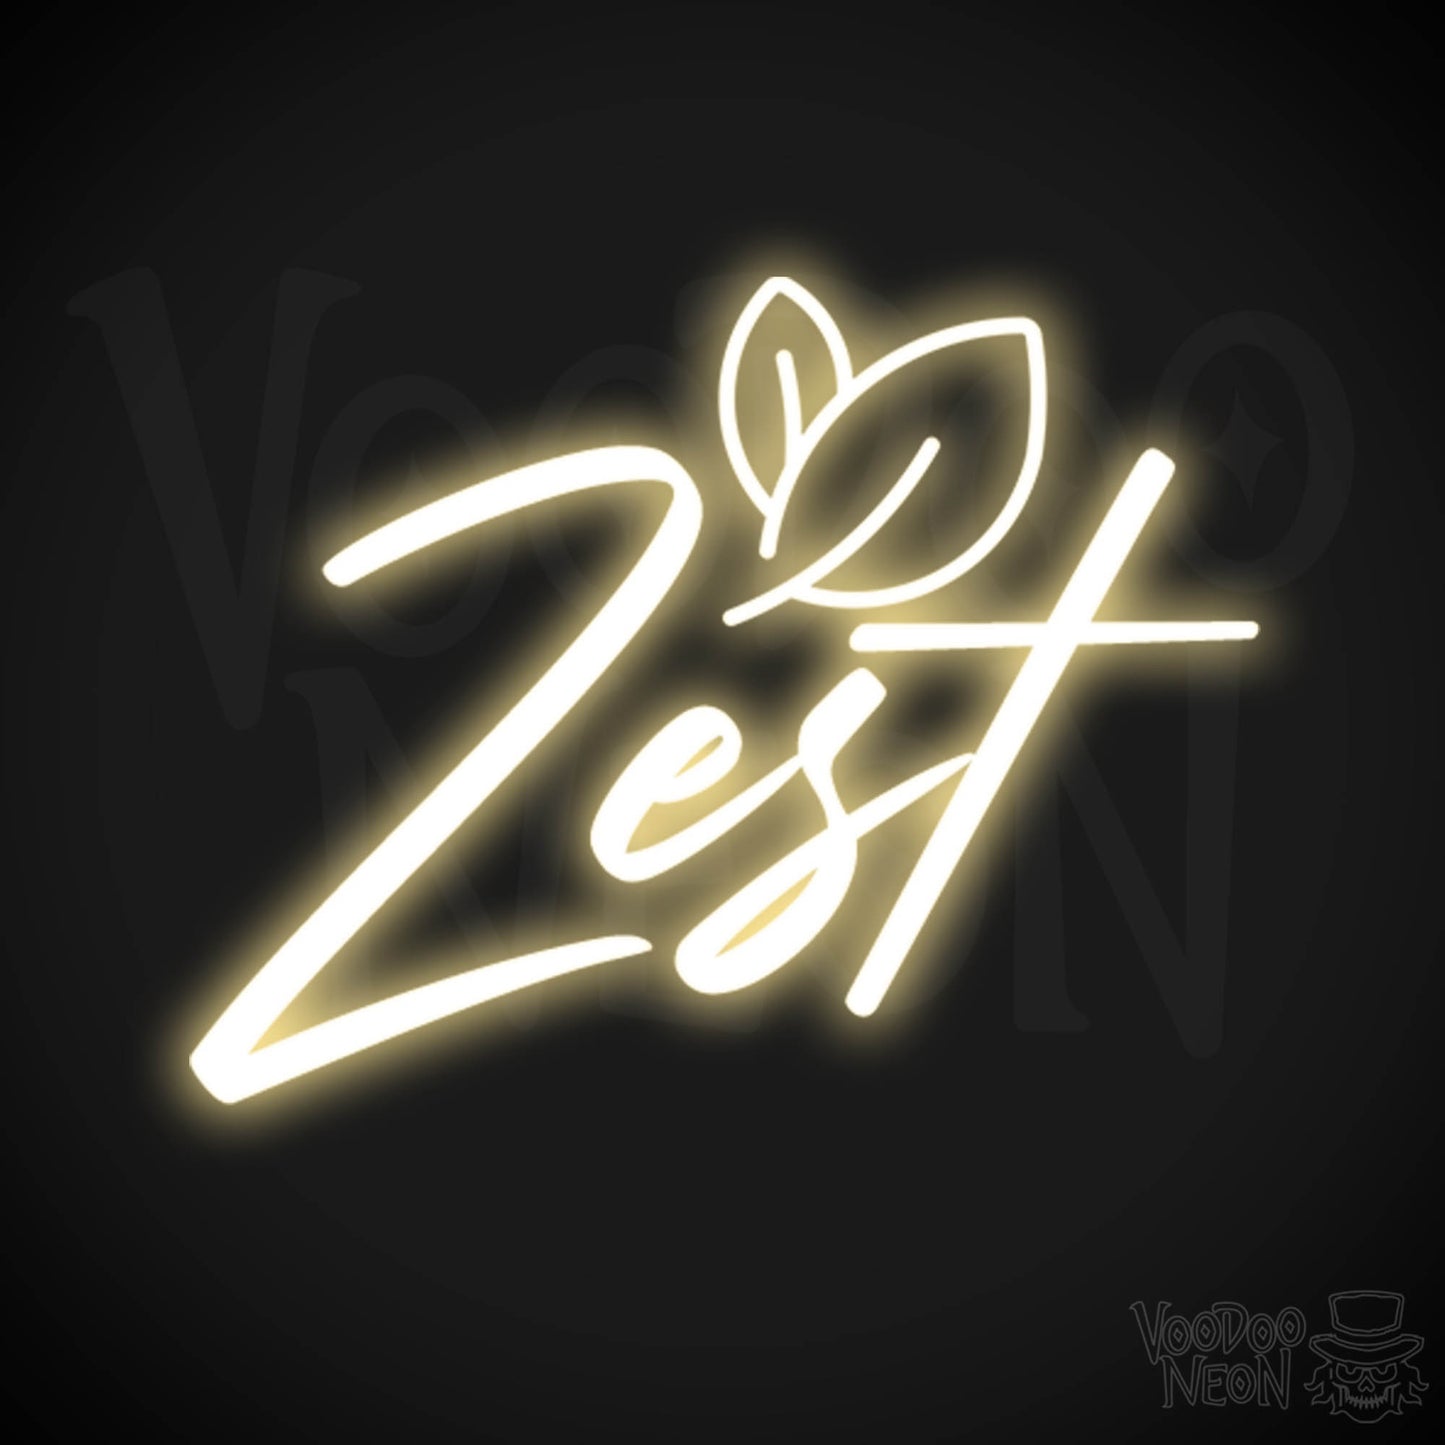 Zest Neon Sign - Neon Zest Sign - Color Warm White